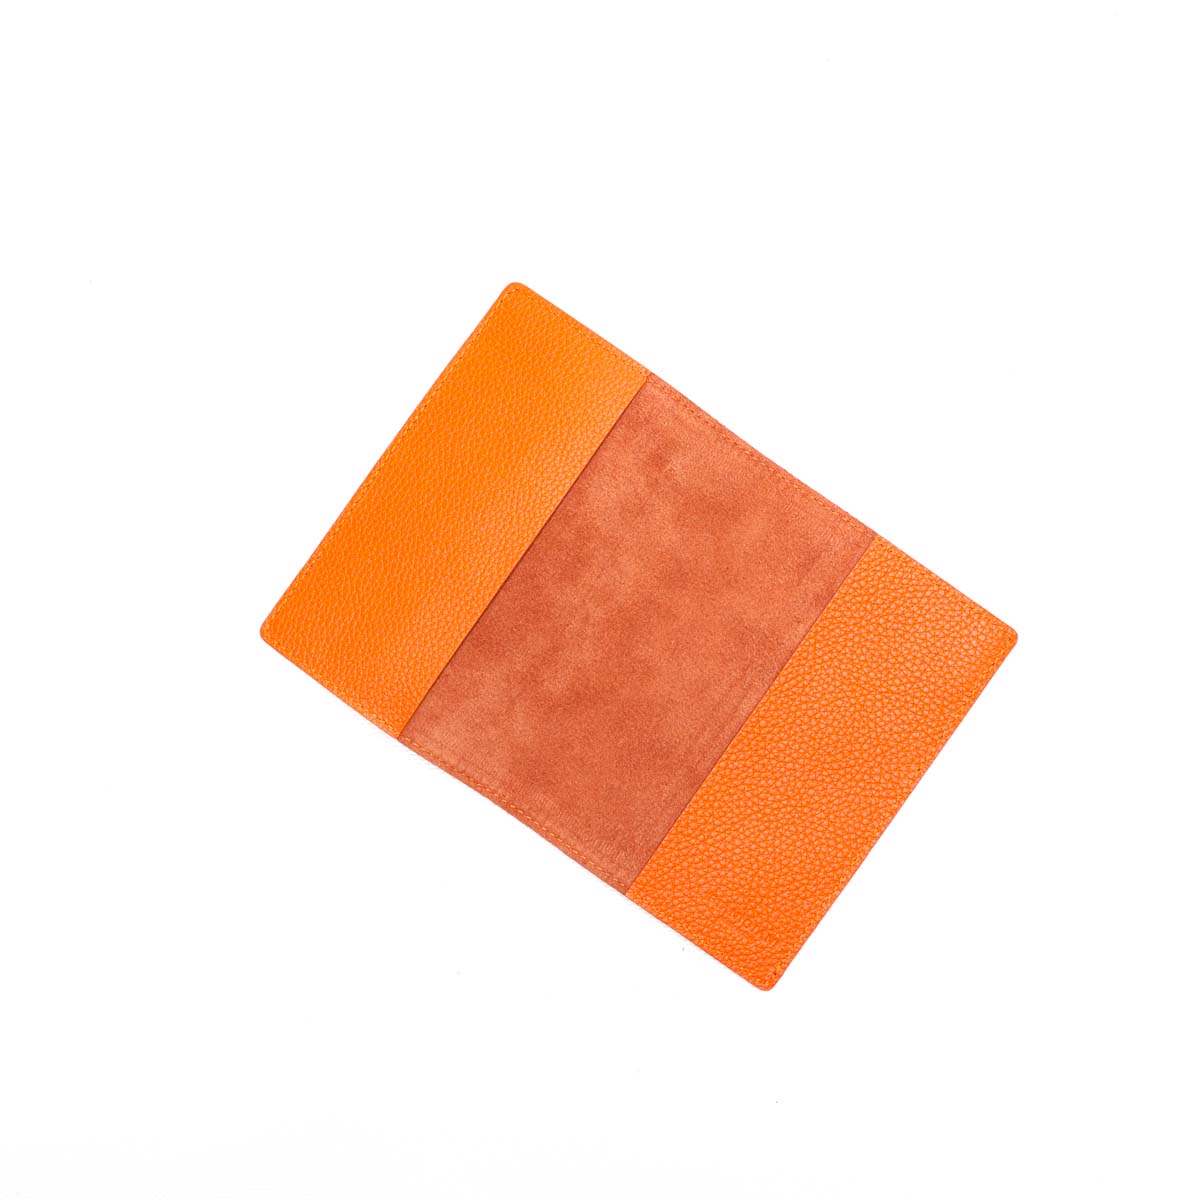 Porta passaporto in pelle martellata arancione, prodotto da Pianigiani Bags.